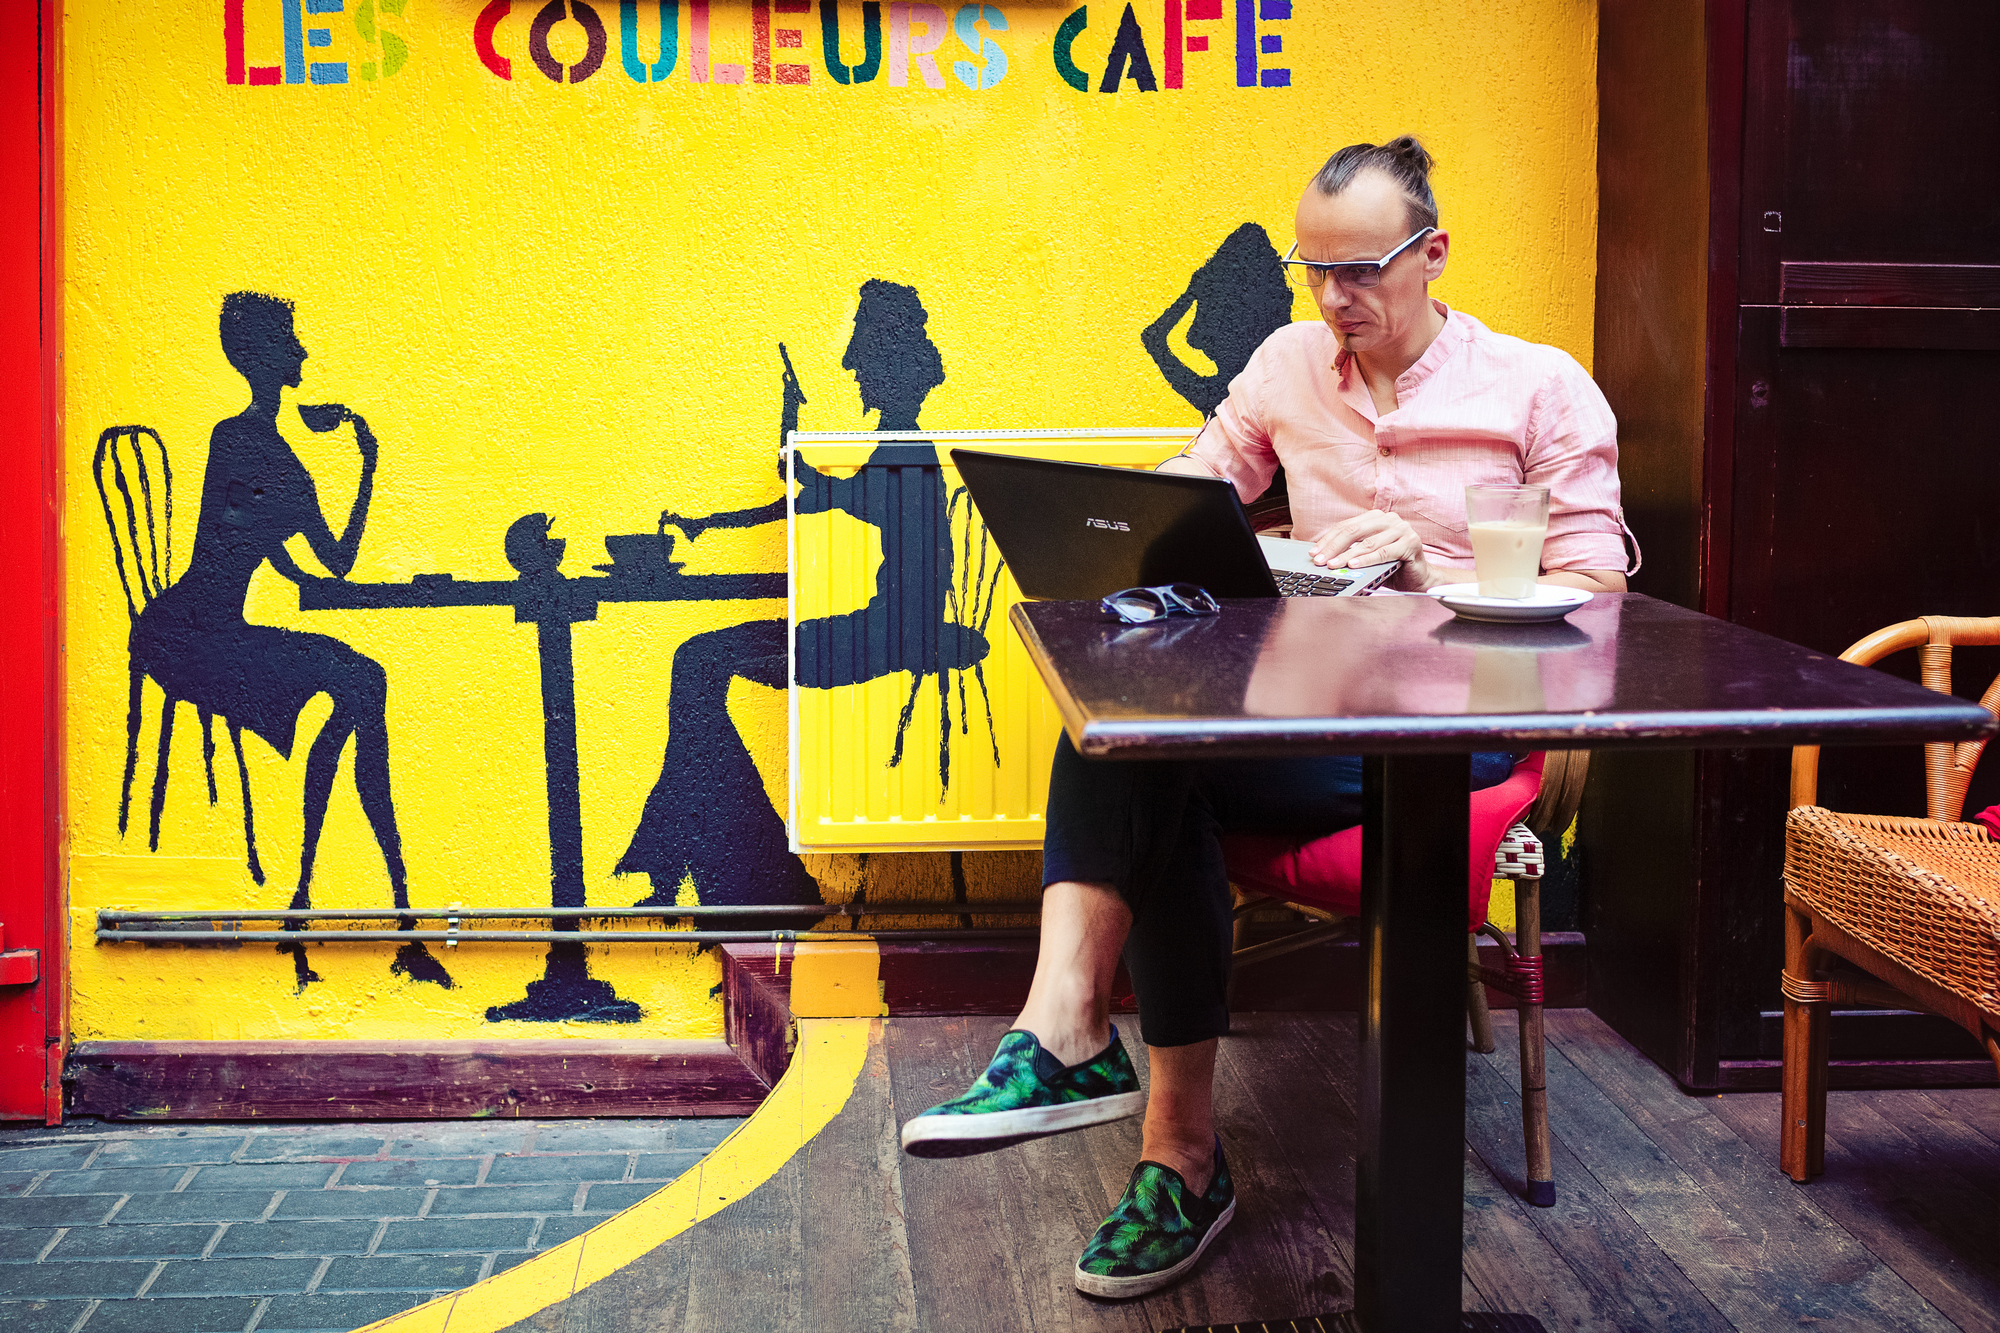 Koncepcyjnie artysta może pracować wszędzie, również w COULEURS CAFE :)